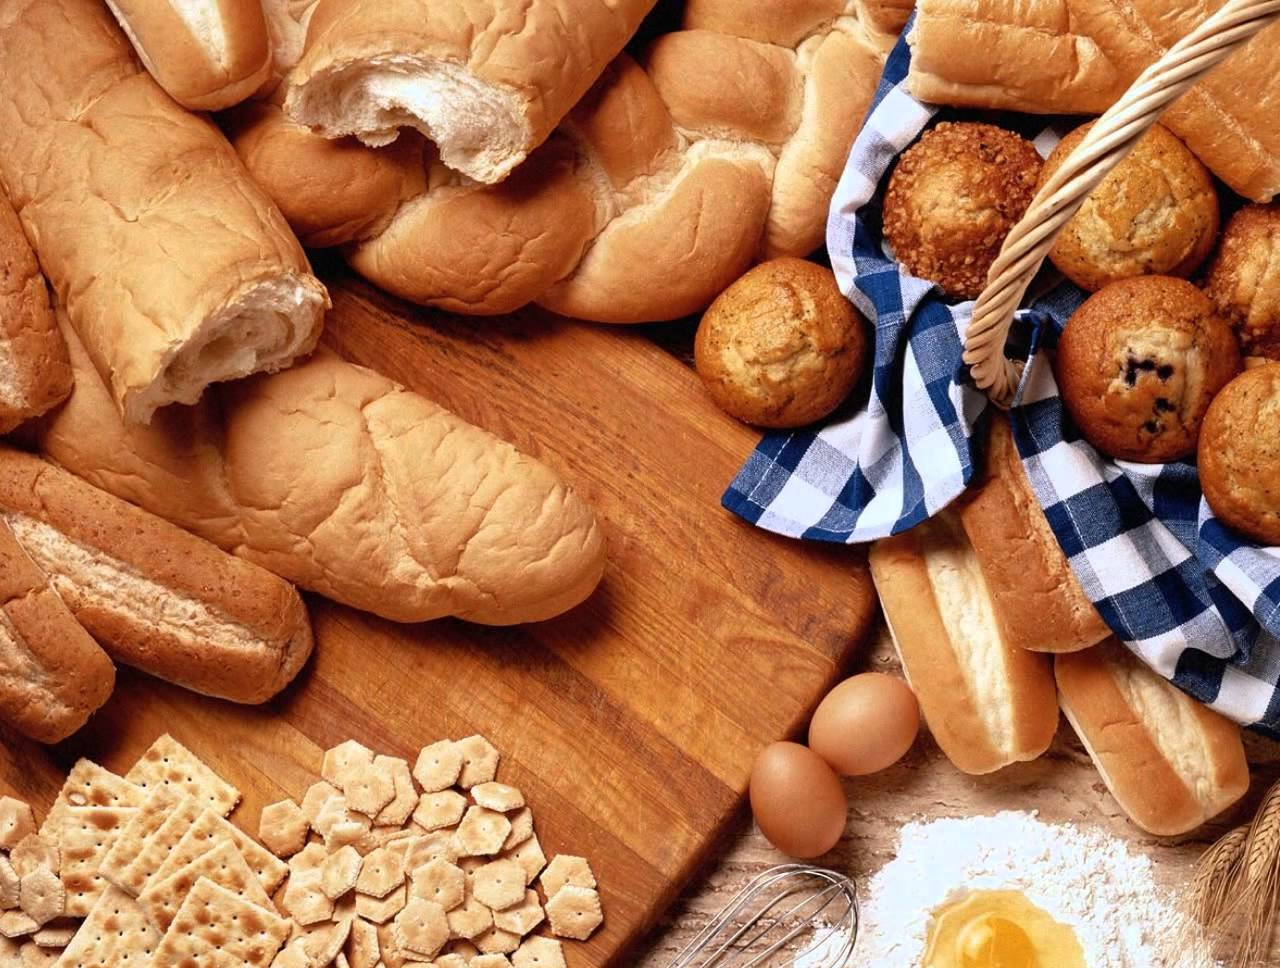 Реферат: Ринок хлібу та хлібобулочних виробів в Україні